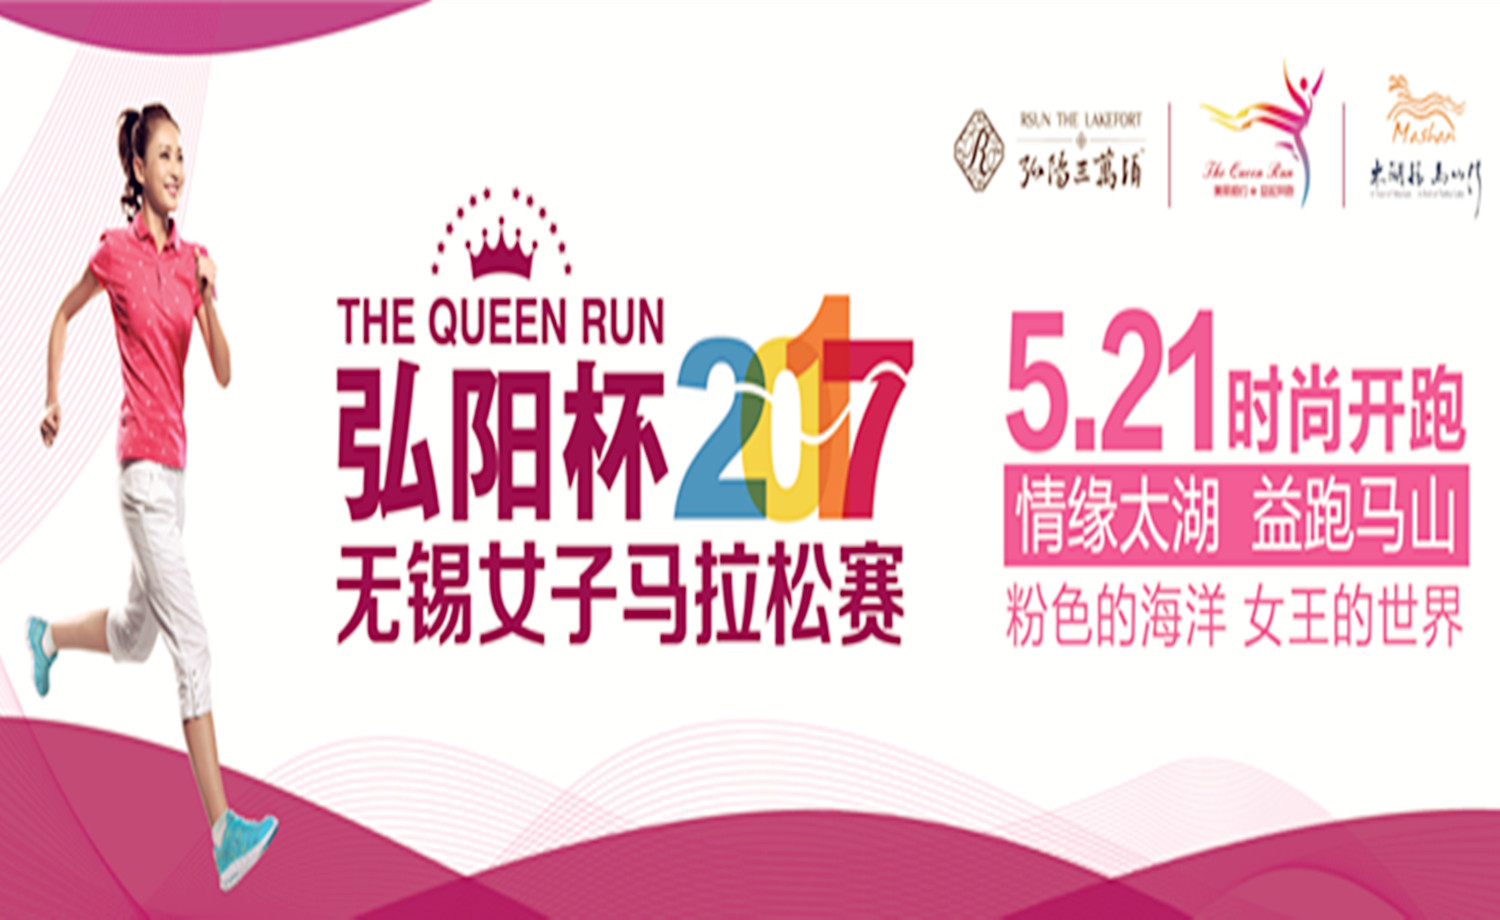 弘阳杯2017无锡女子马拉松赛